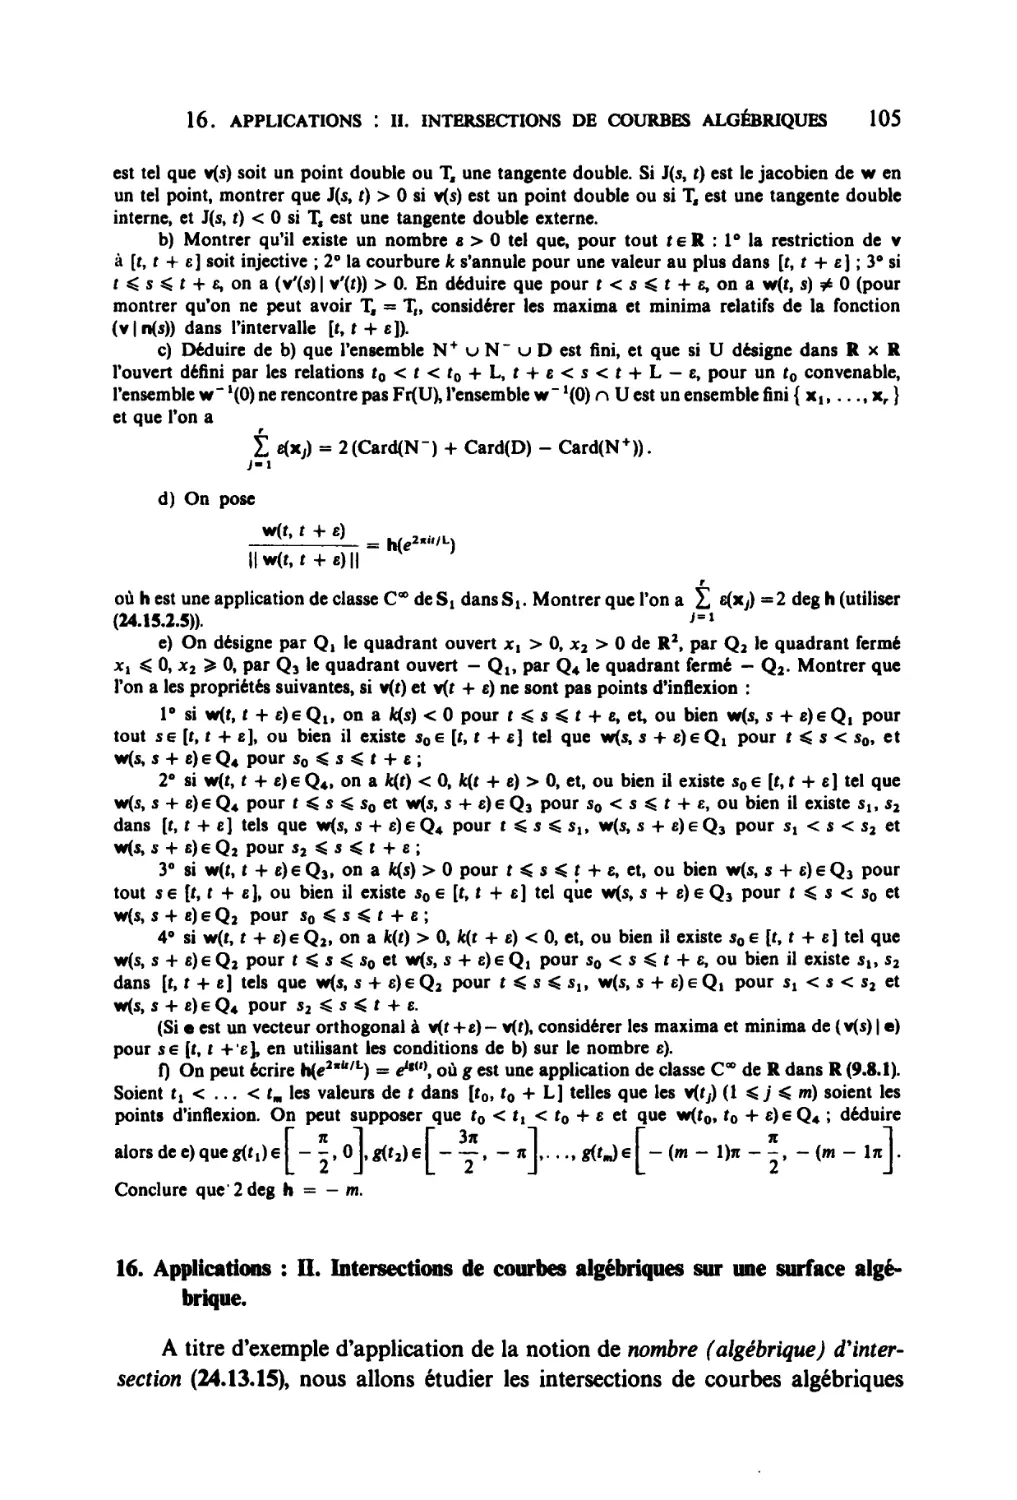 16. Applications: II. Intersections de courbes algébriques sur une surface algébrique